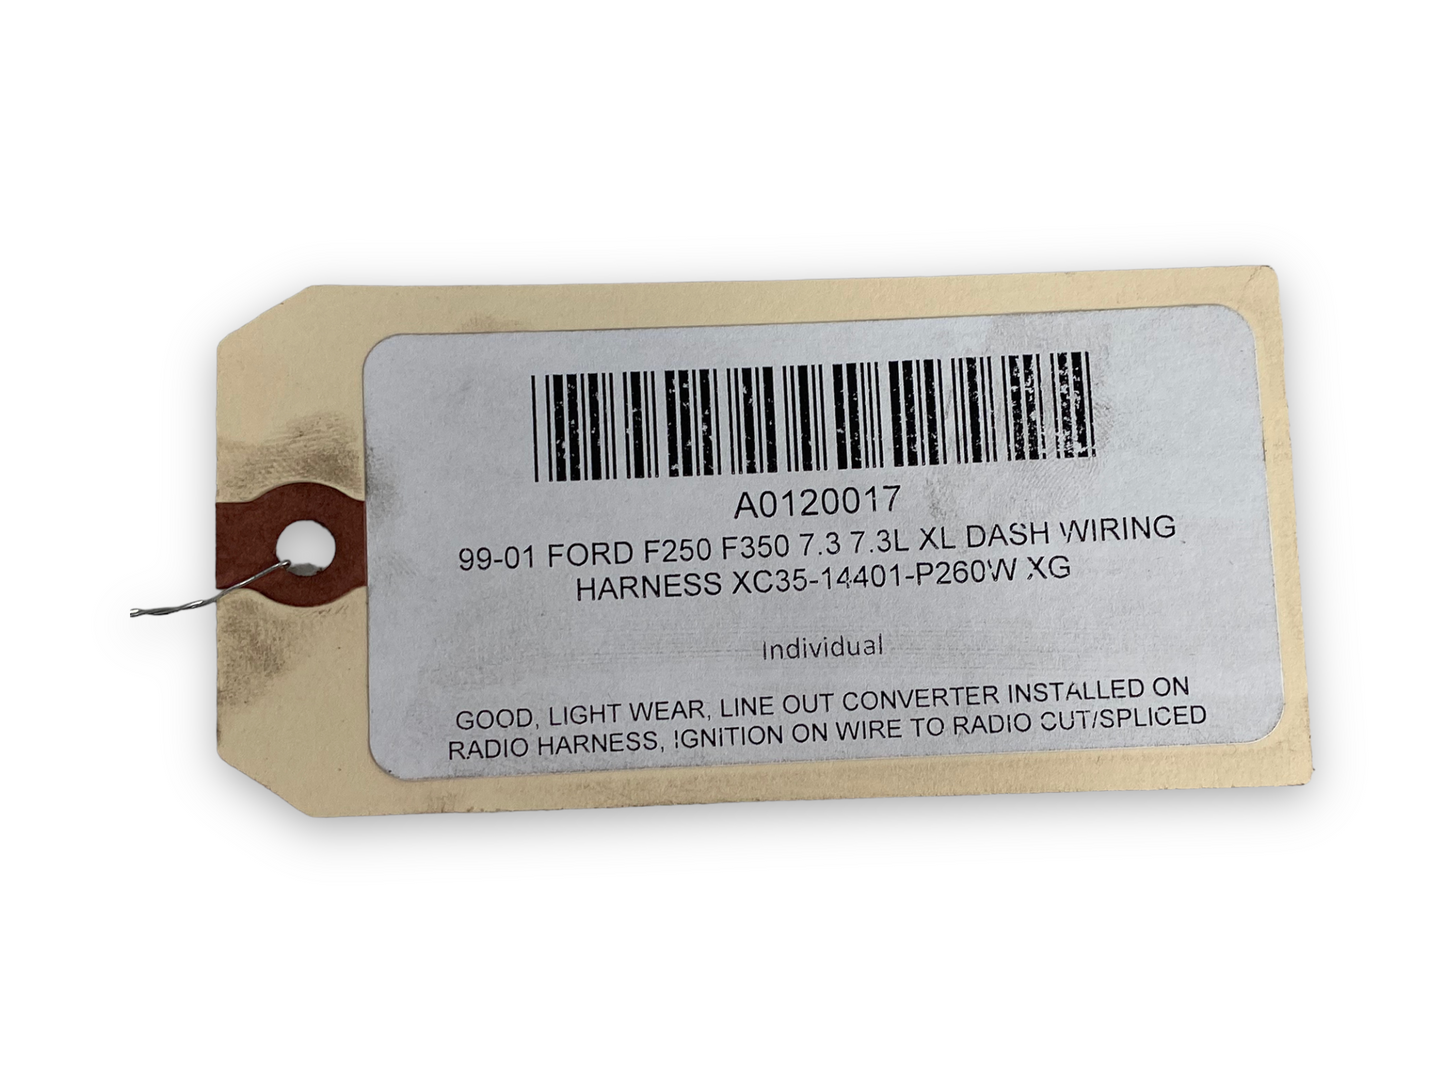 99-01 Ford F250 F350 7.3 7.3L XL Dash Wiring Harness XC35-14401-P260W XG